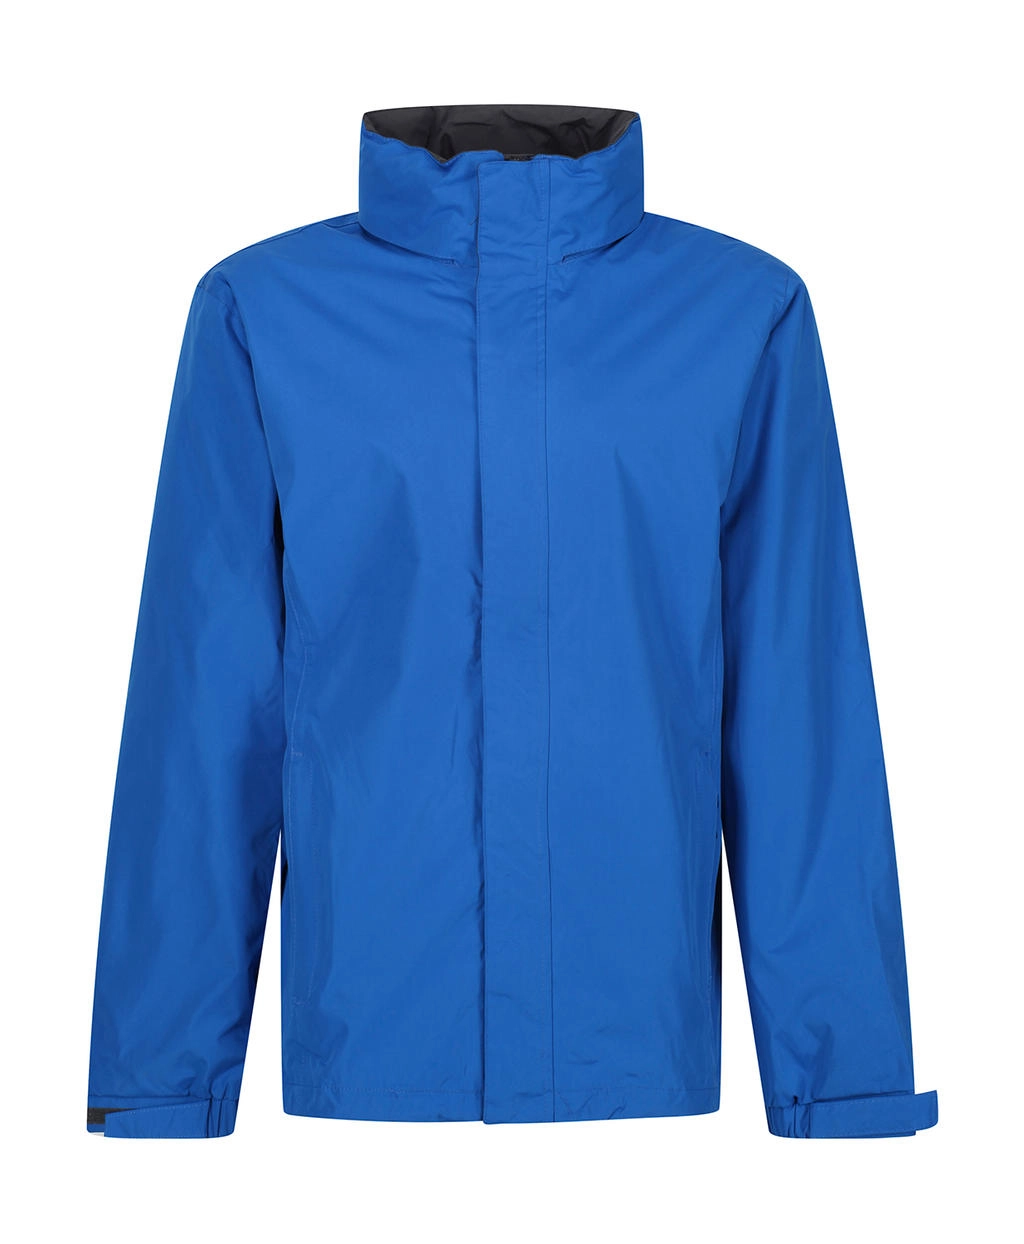 Ardmore Jacket zum Besticken und Bedrucken in der Farbe Oxford Blue/Seal Grey mit Ihren Logo, Schriftzug oder Motiv.